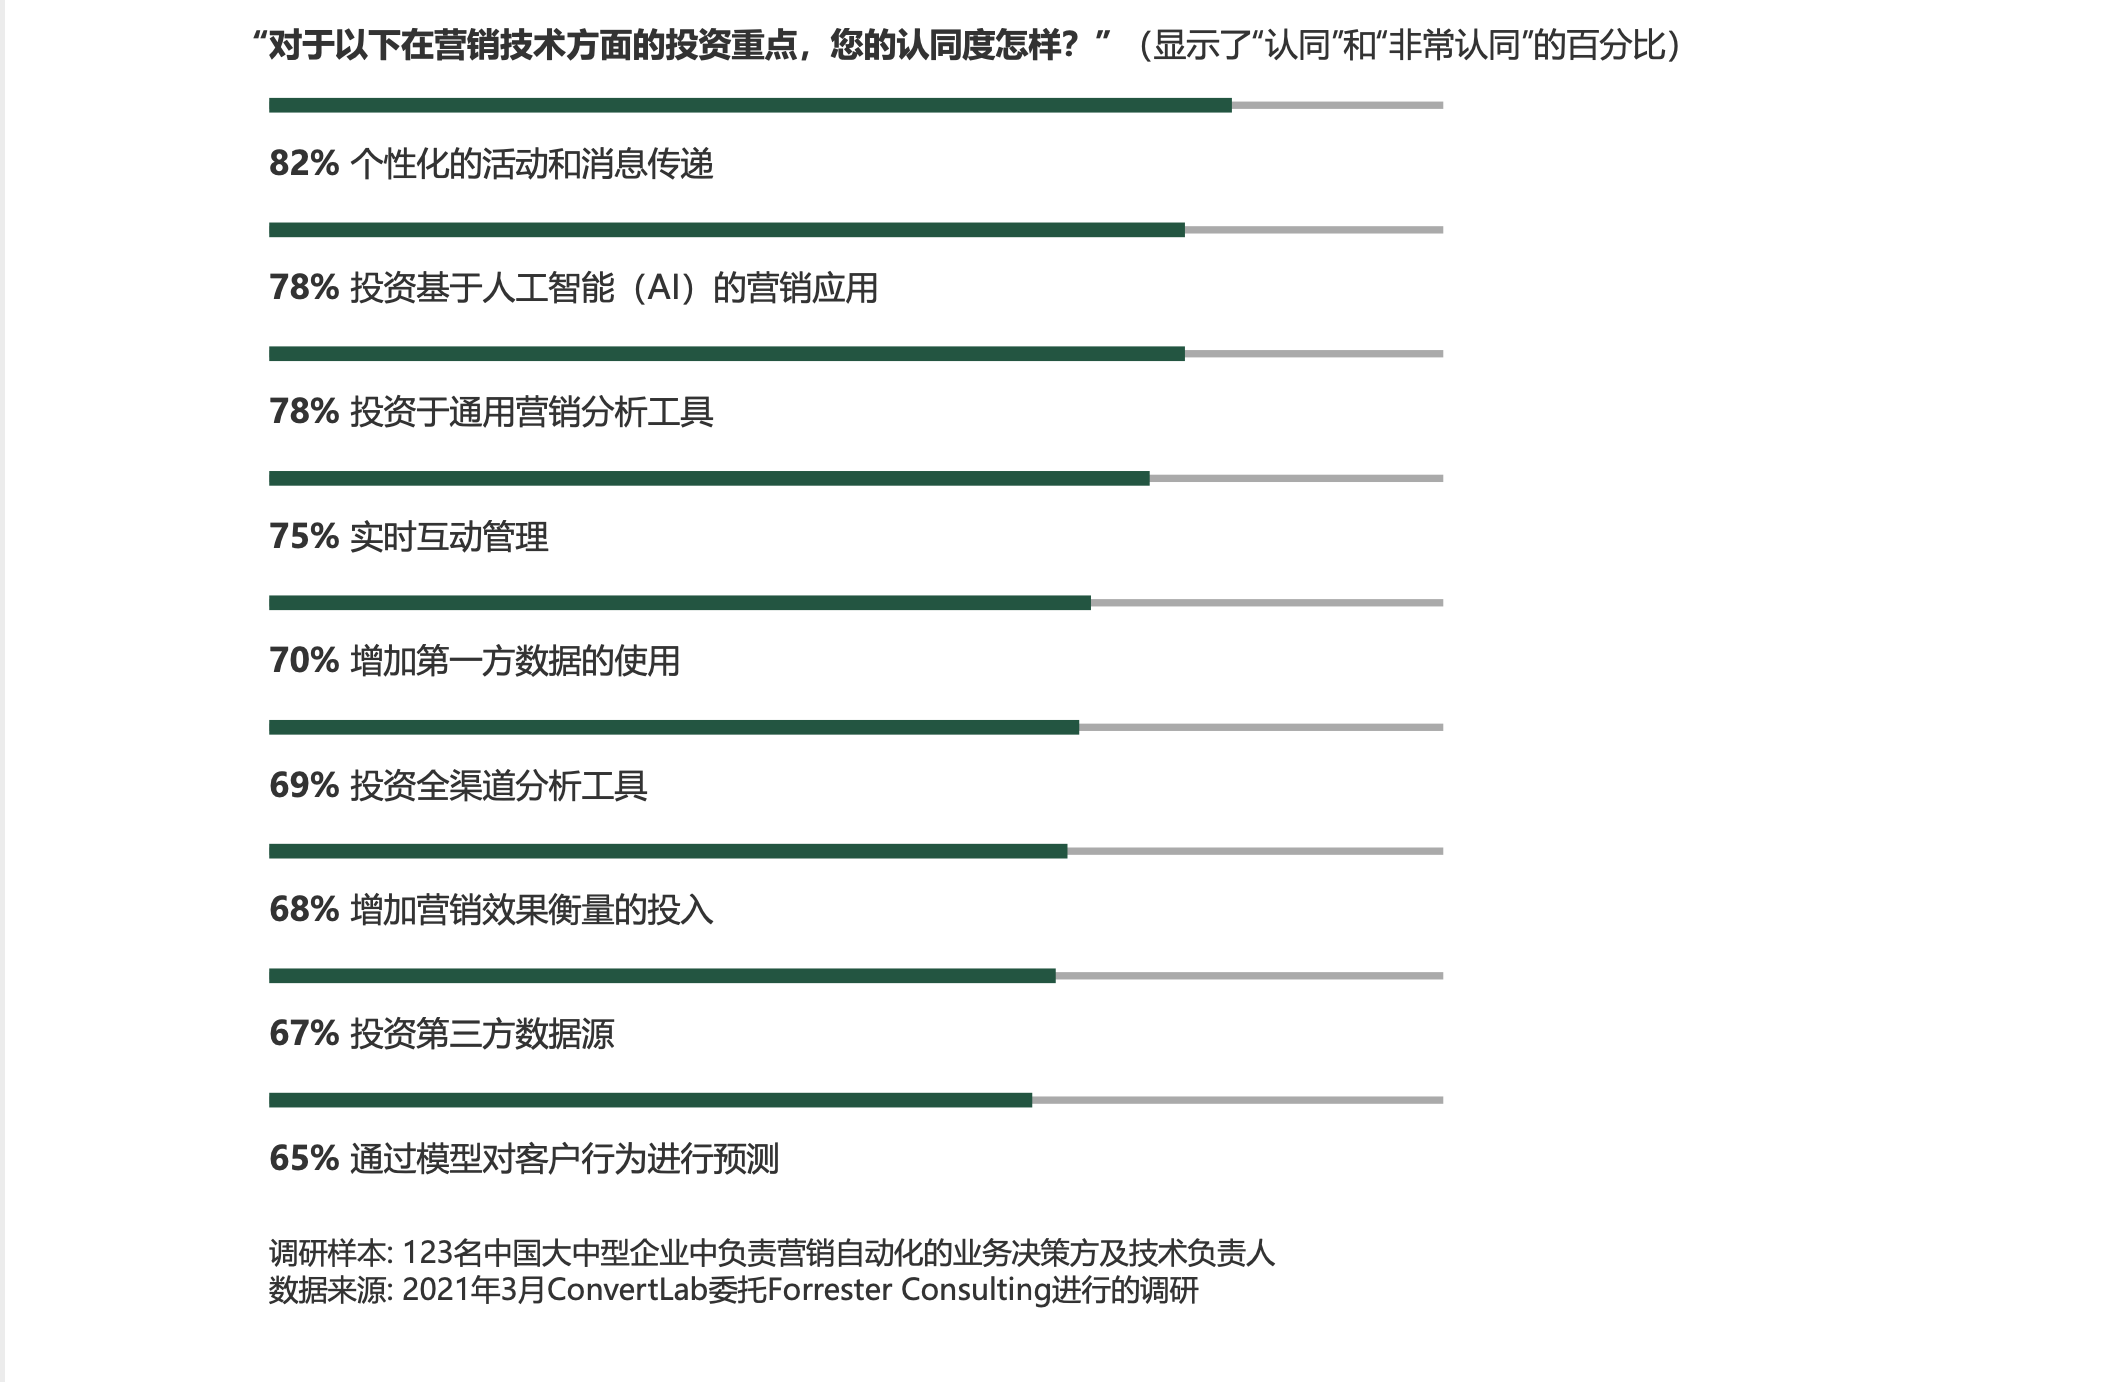 Convertlab & Forrester发布中国营销自动化领导力报告